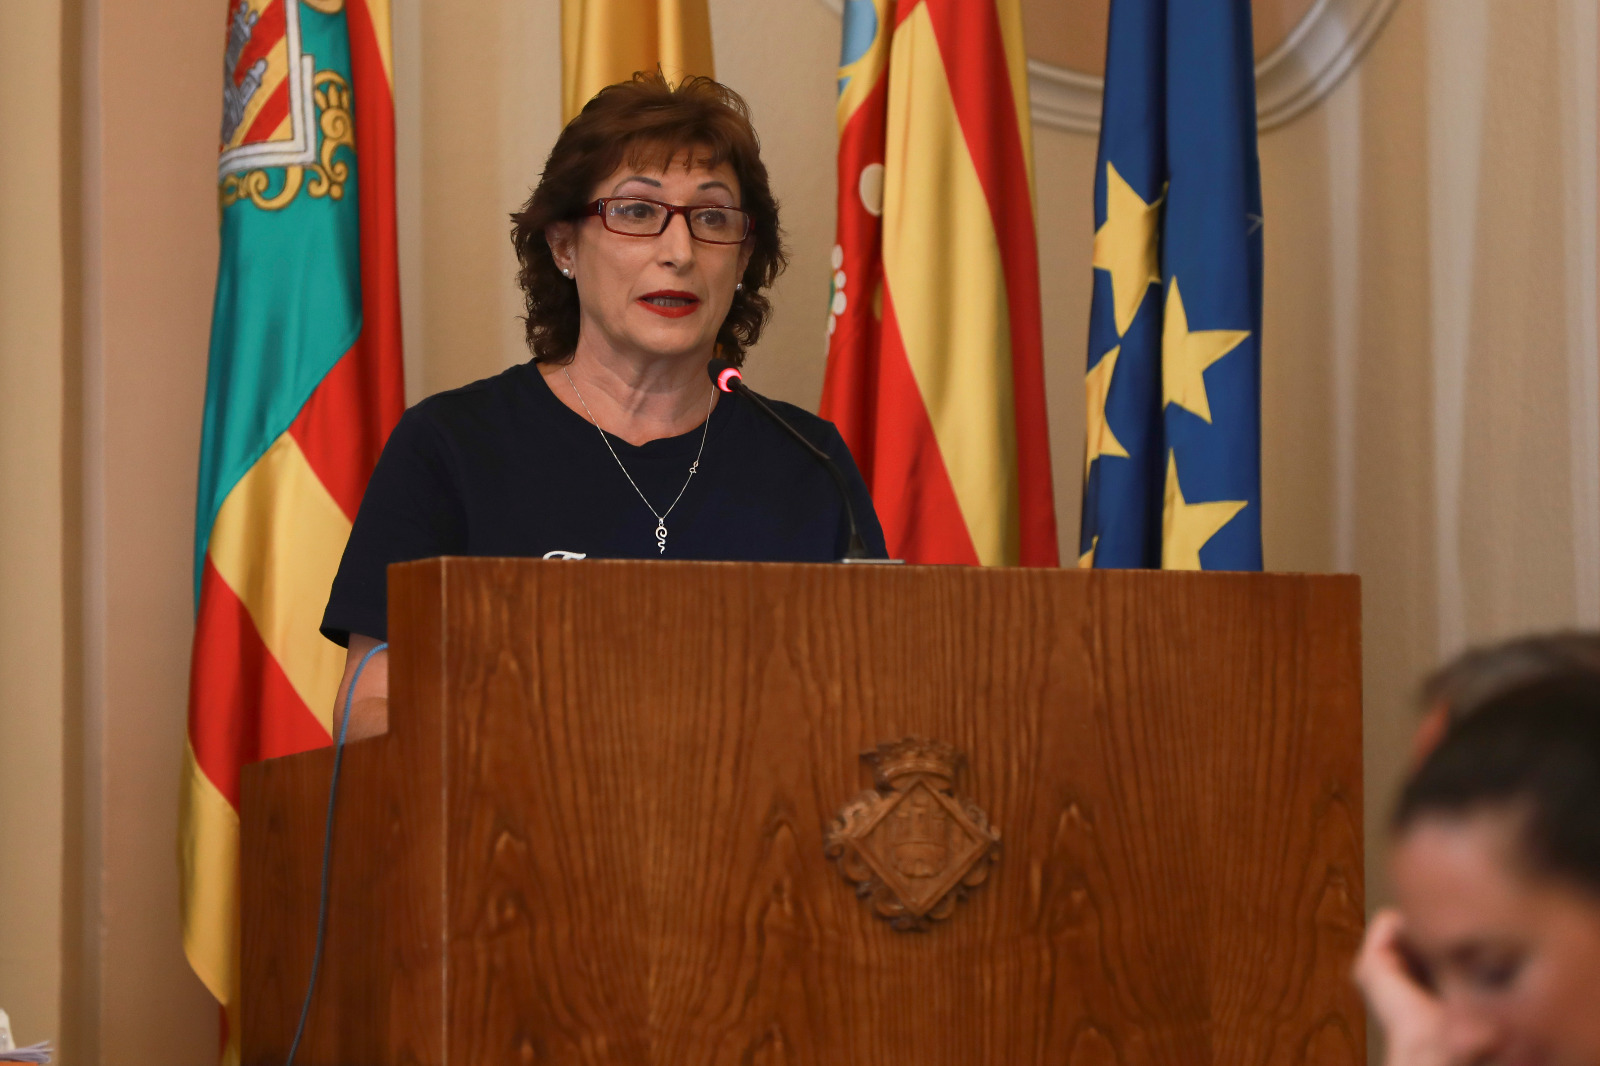 “Begoña Carrasco menysté a les associacions ciutadanes de Castelló en limitar les ajudes